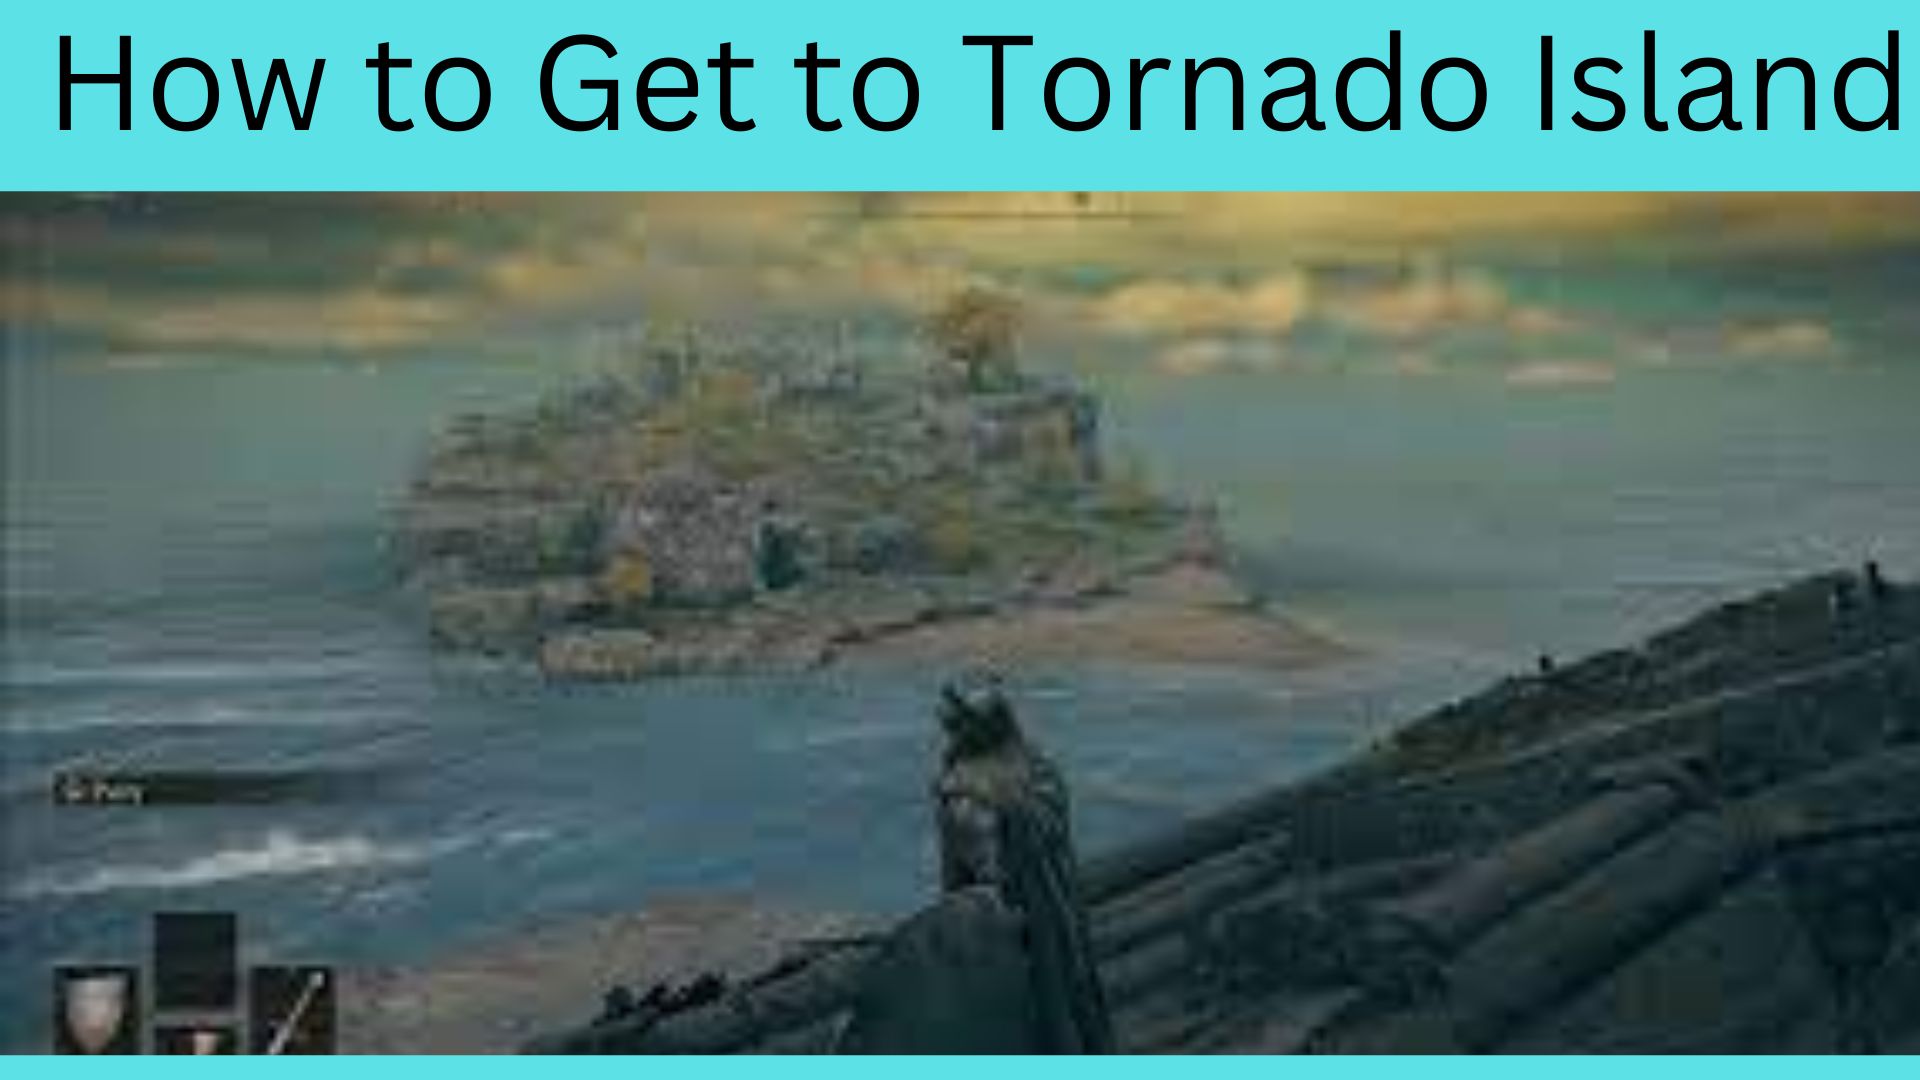 How to Get to Tornado Island